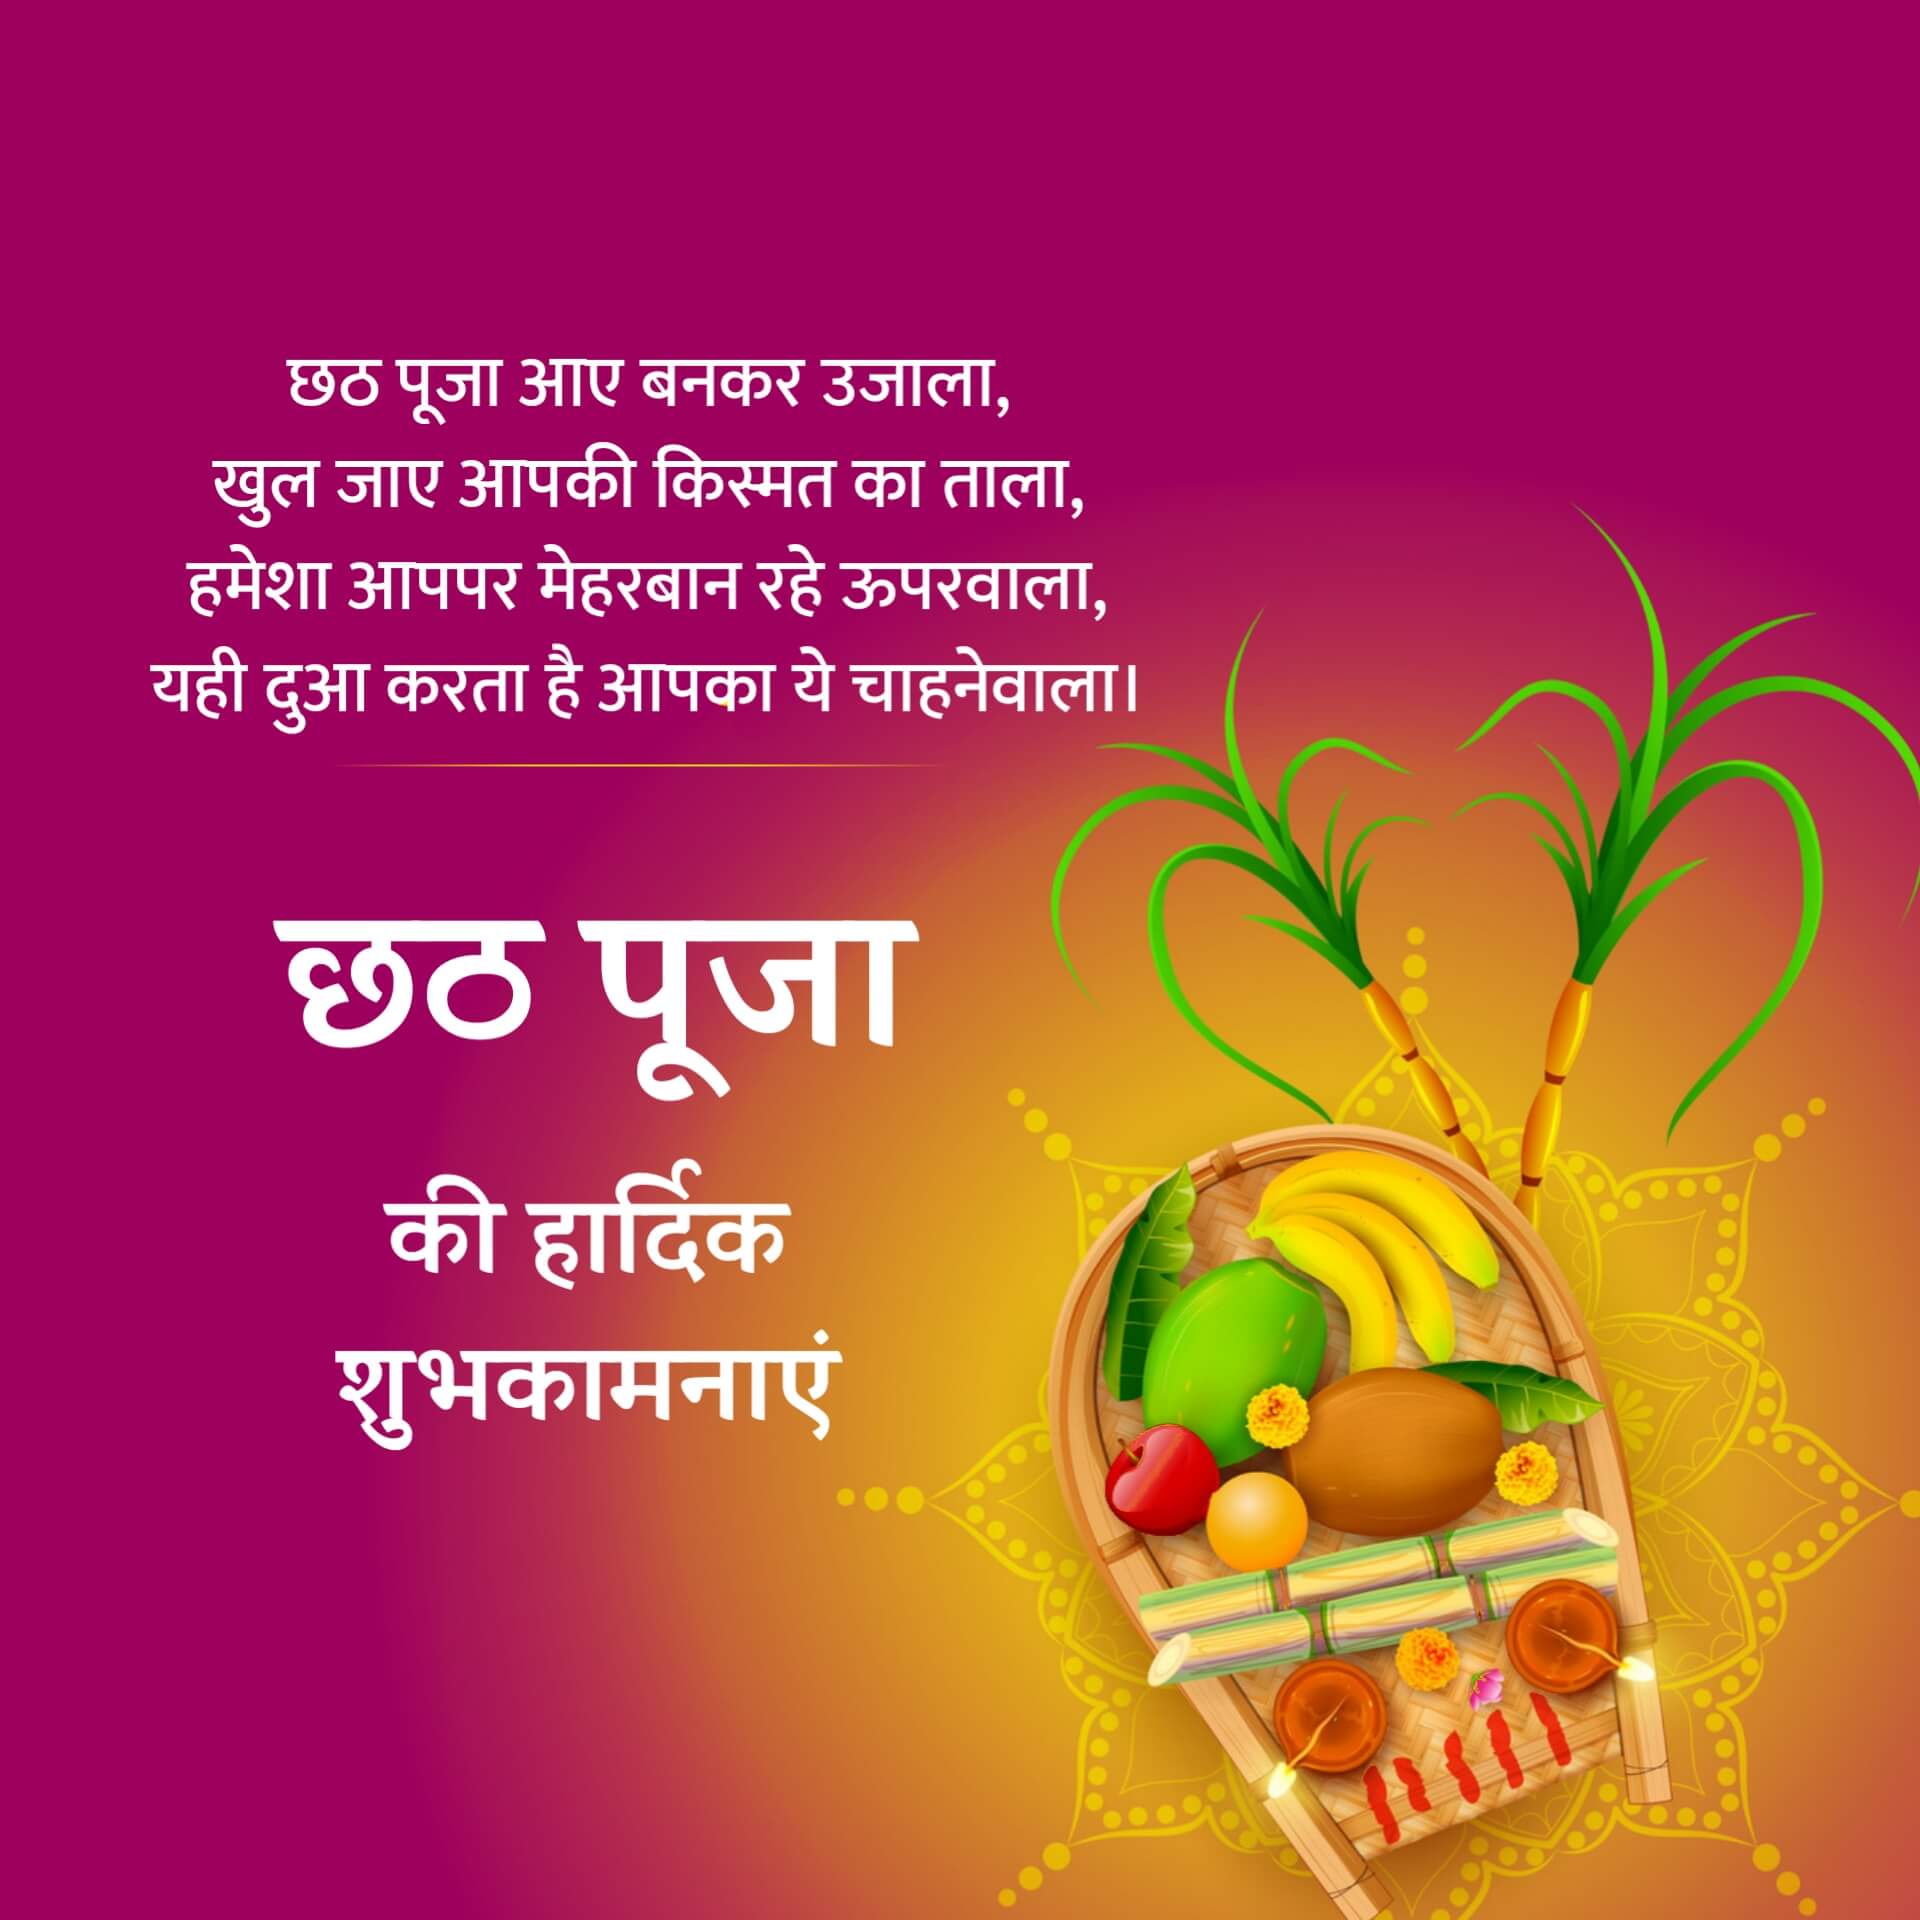 Hindi Chhath Puja Wishes Image